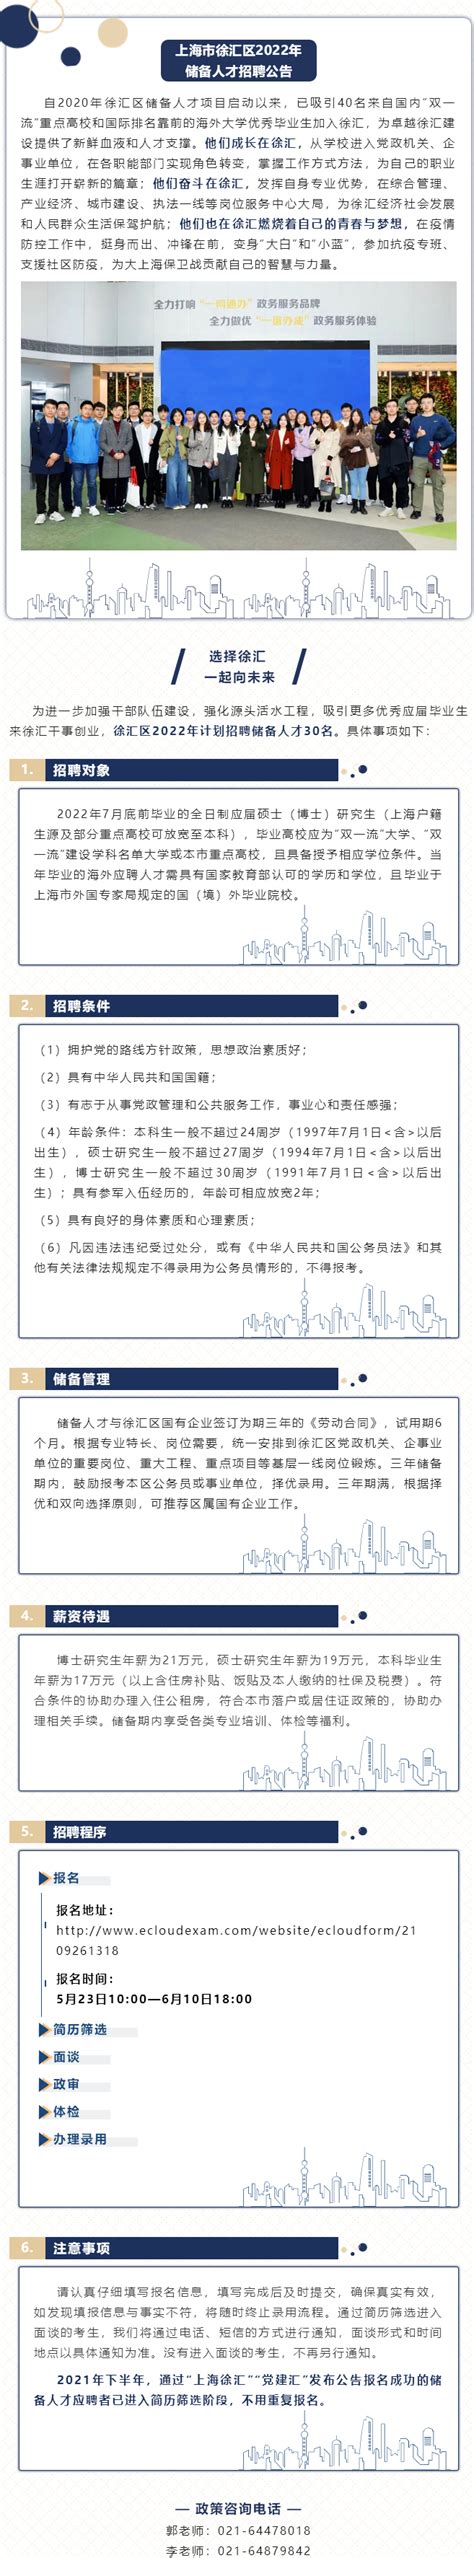 上海市徐汇区2022年储备人才招聘公告——兰州大学就业信息网